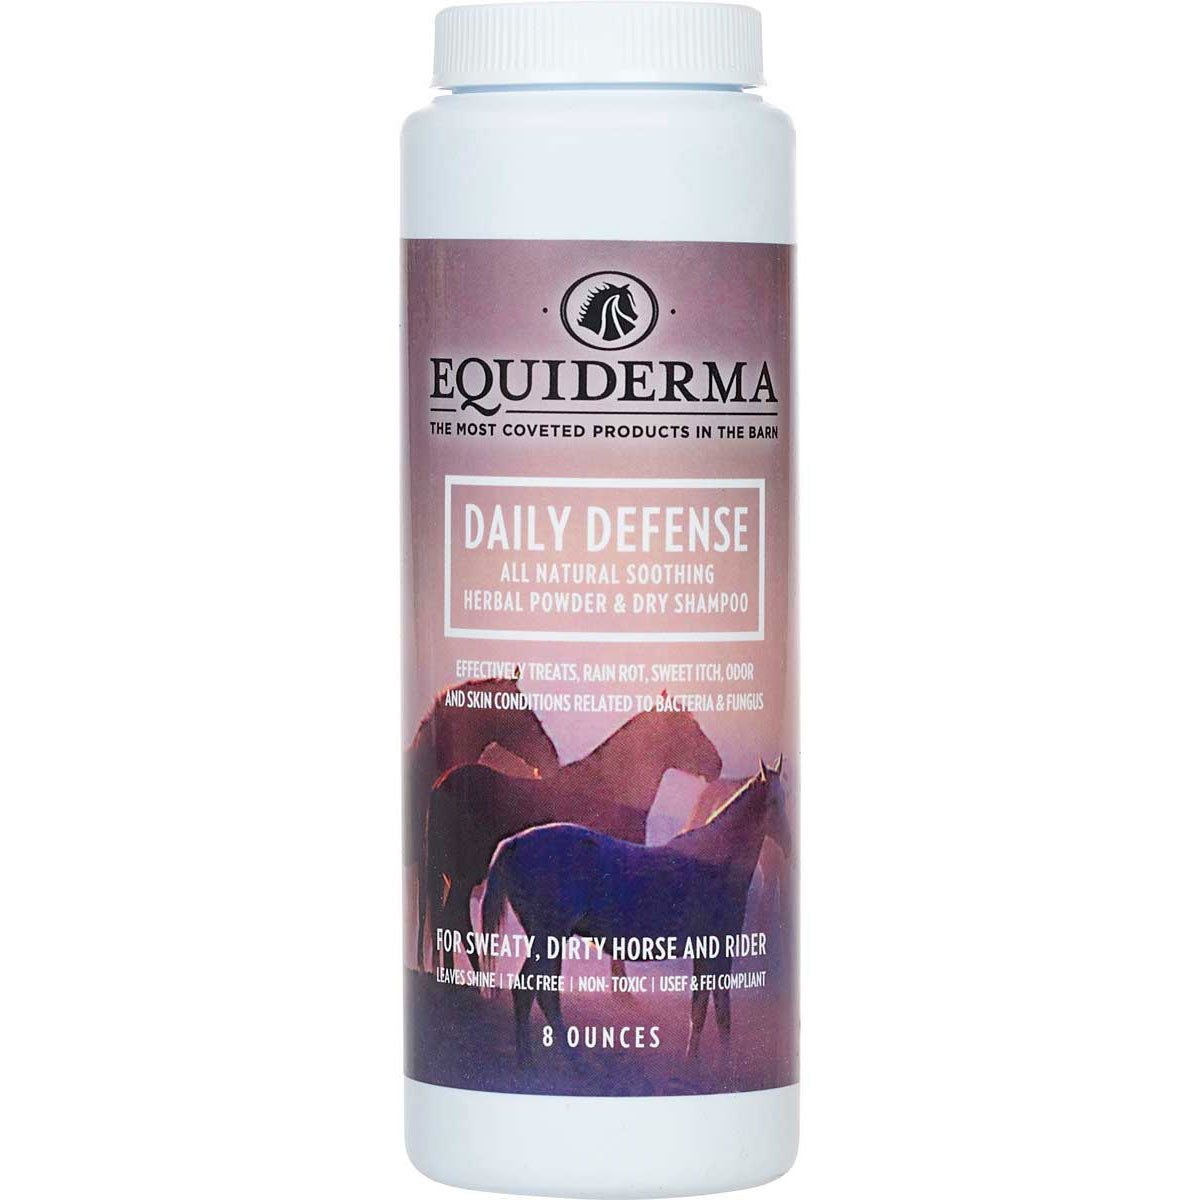 Equiderma Daily Defense Dry Shampoo - 8 oz